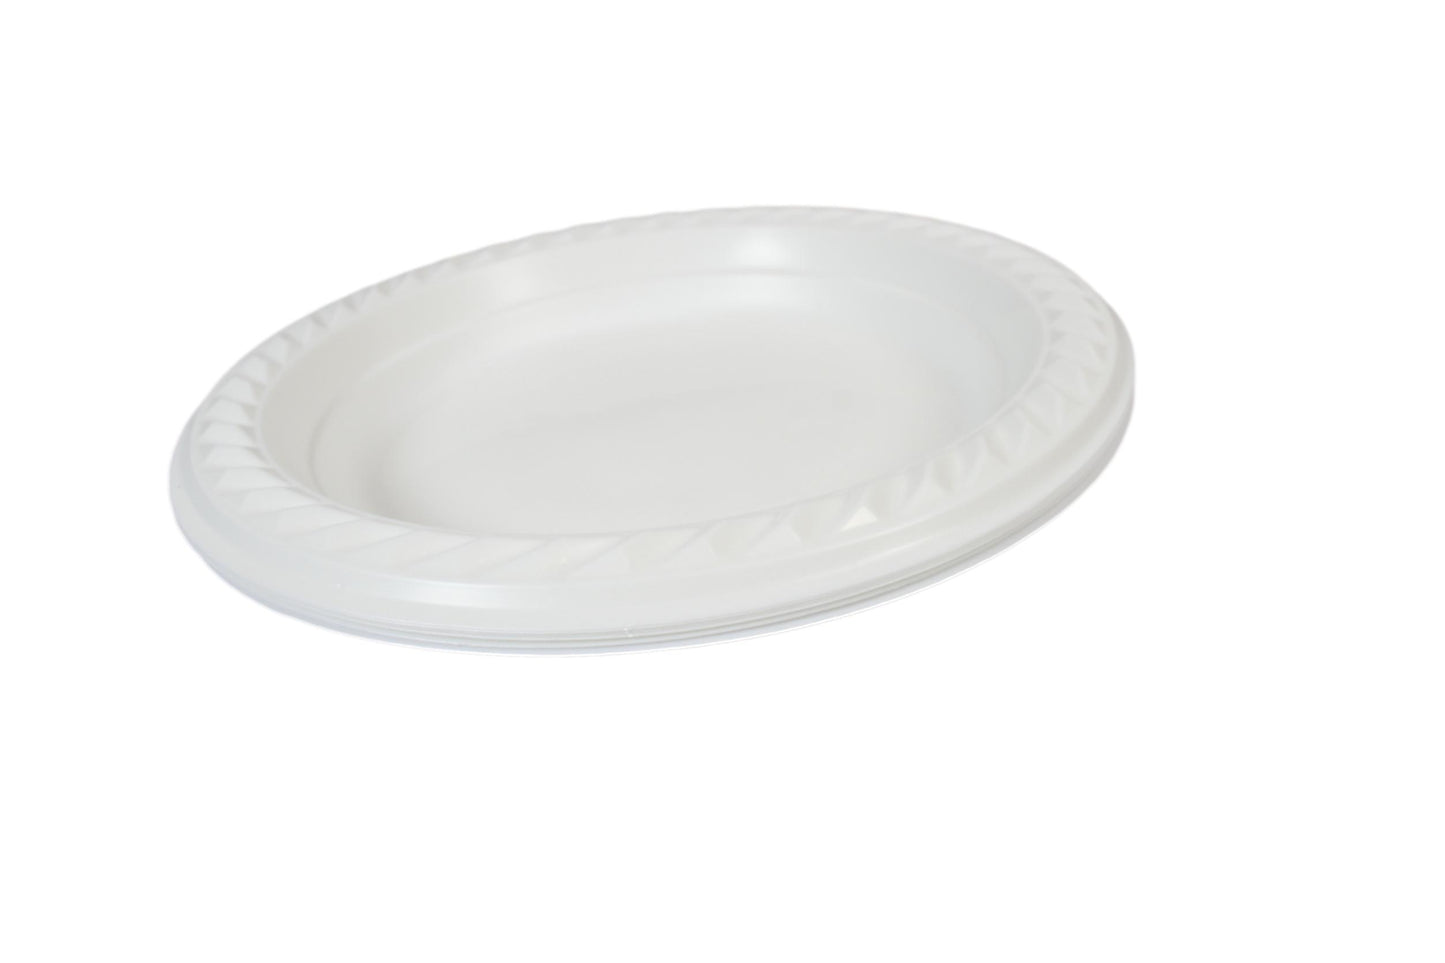 100 White Plastic Plates 7 " Suitable For Picnics Birthdays Parties 17cm (Parcel Rate)